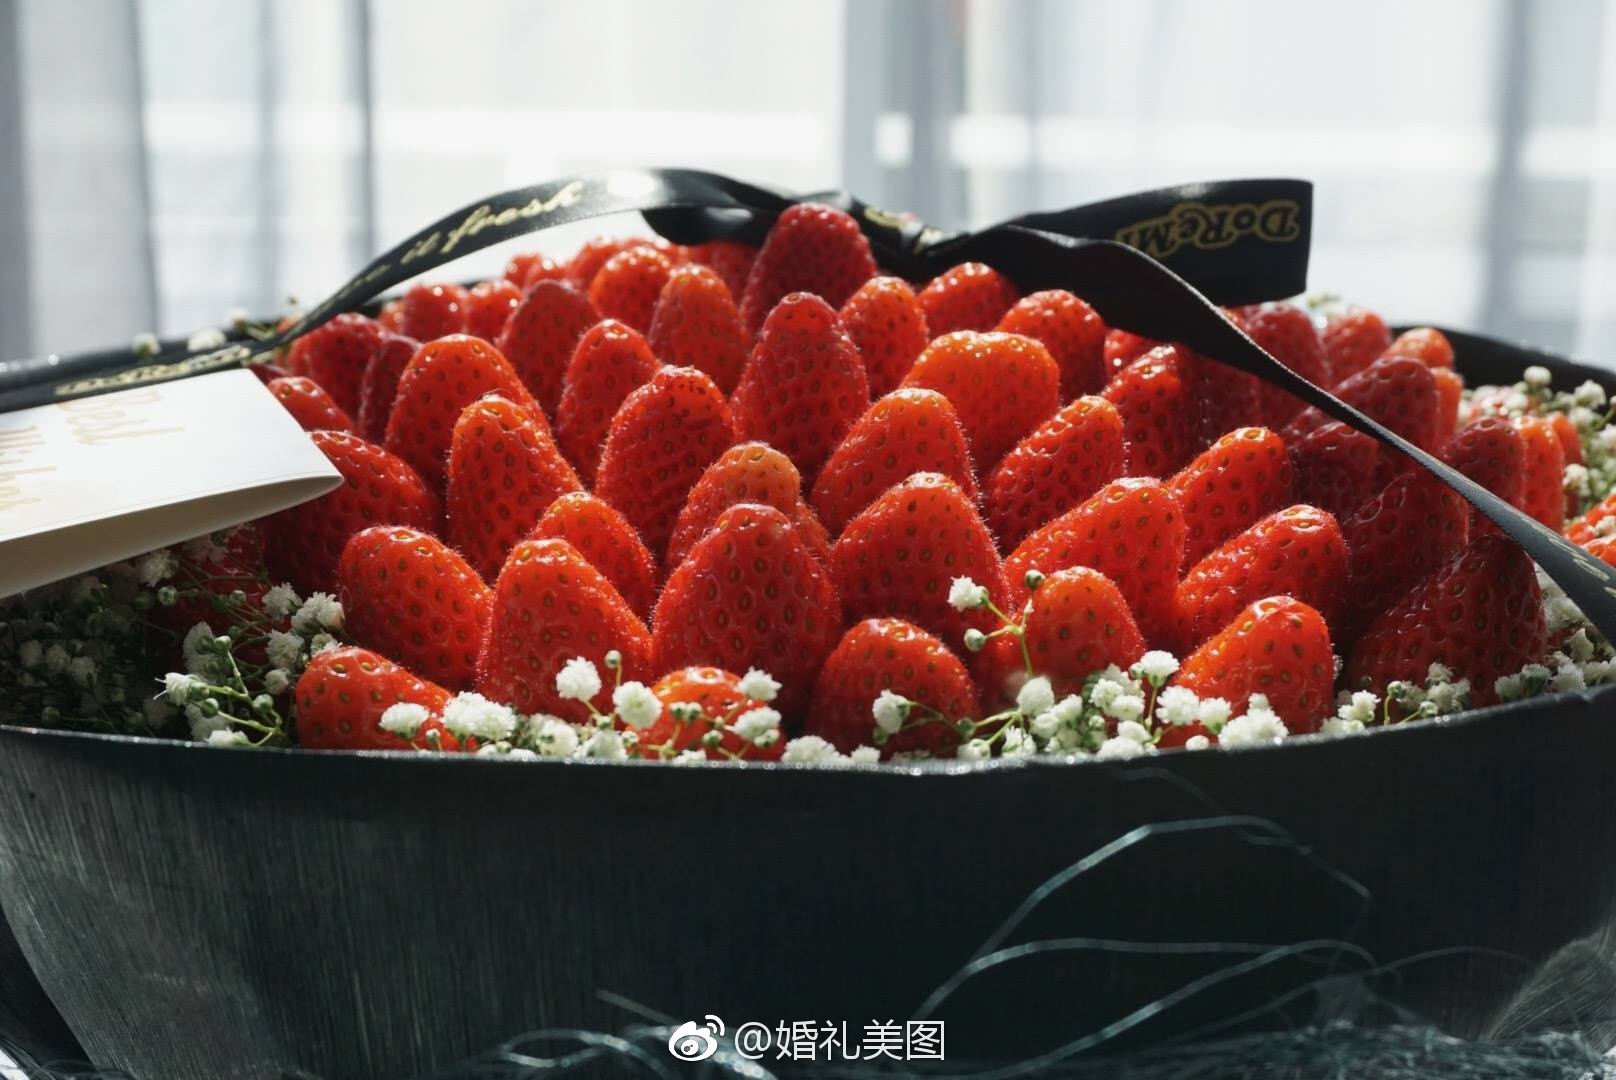 这个情人节礼物最食用!草莓花束，超美的!!重点是还可以吃